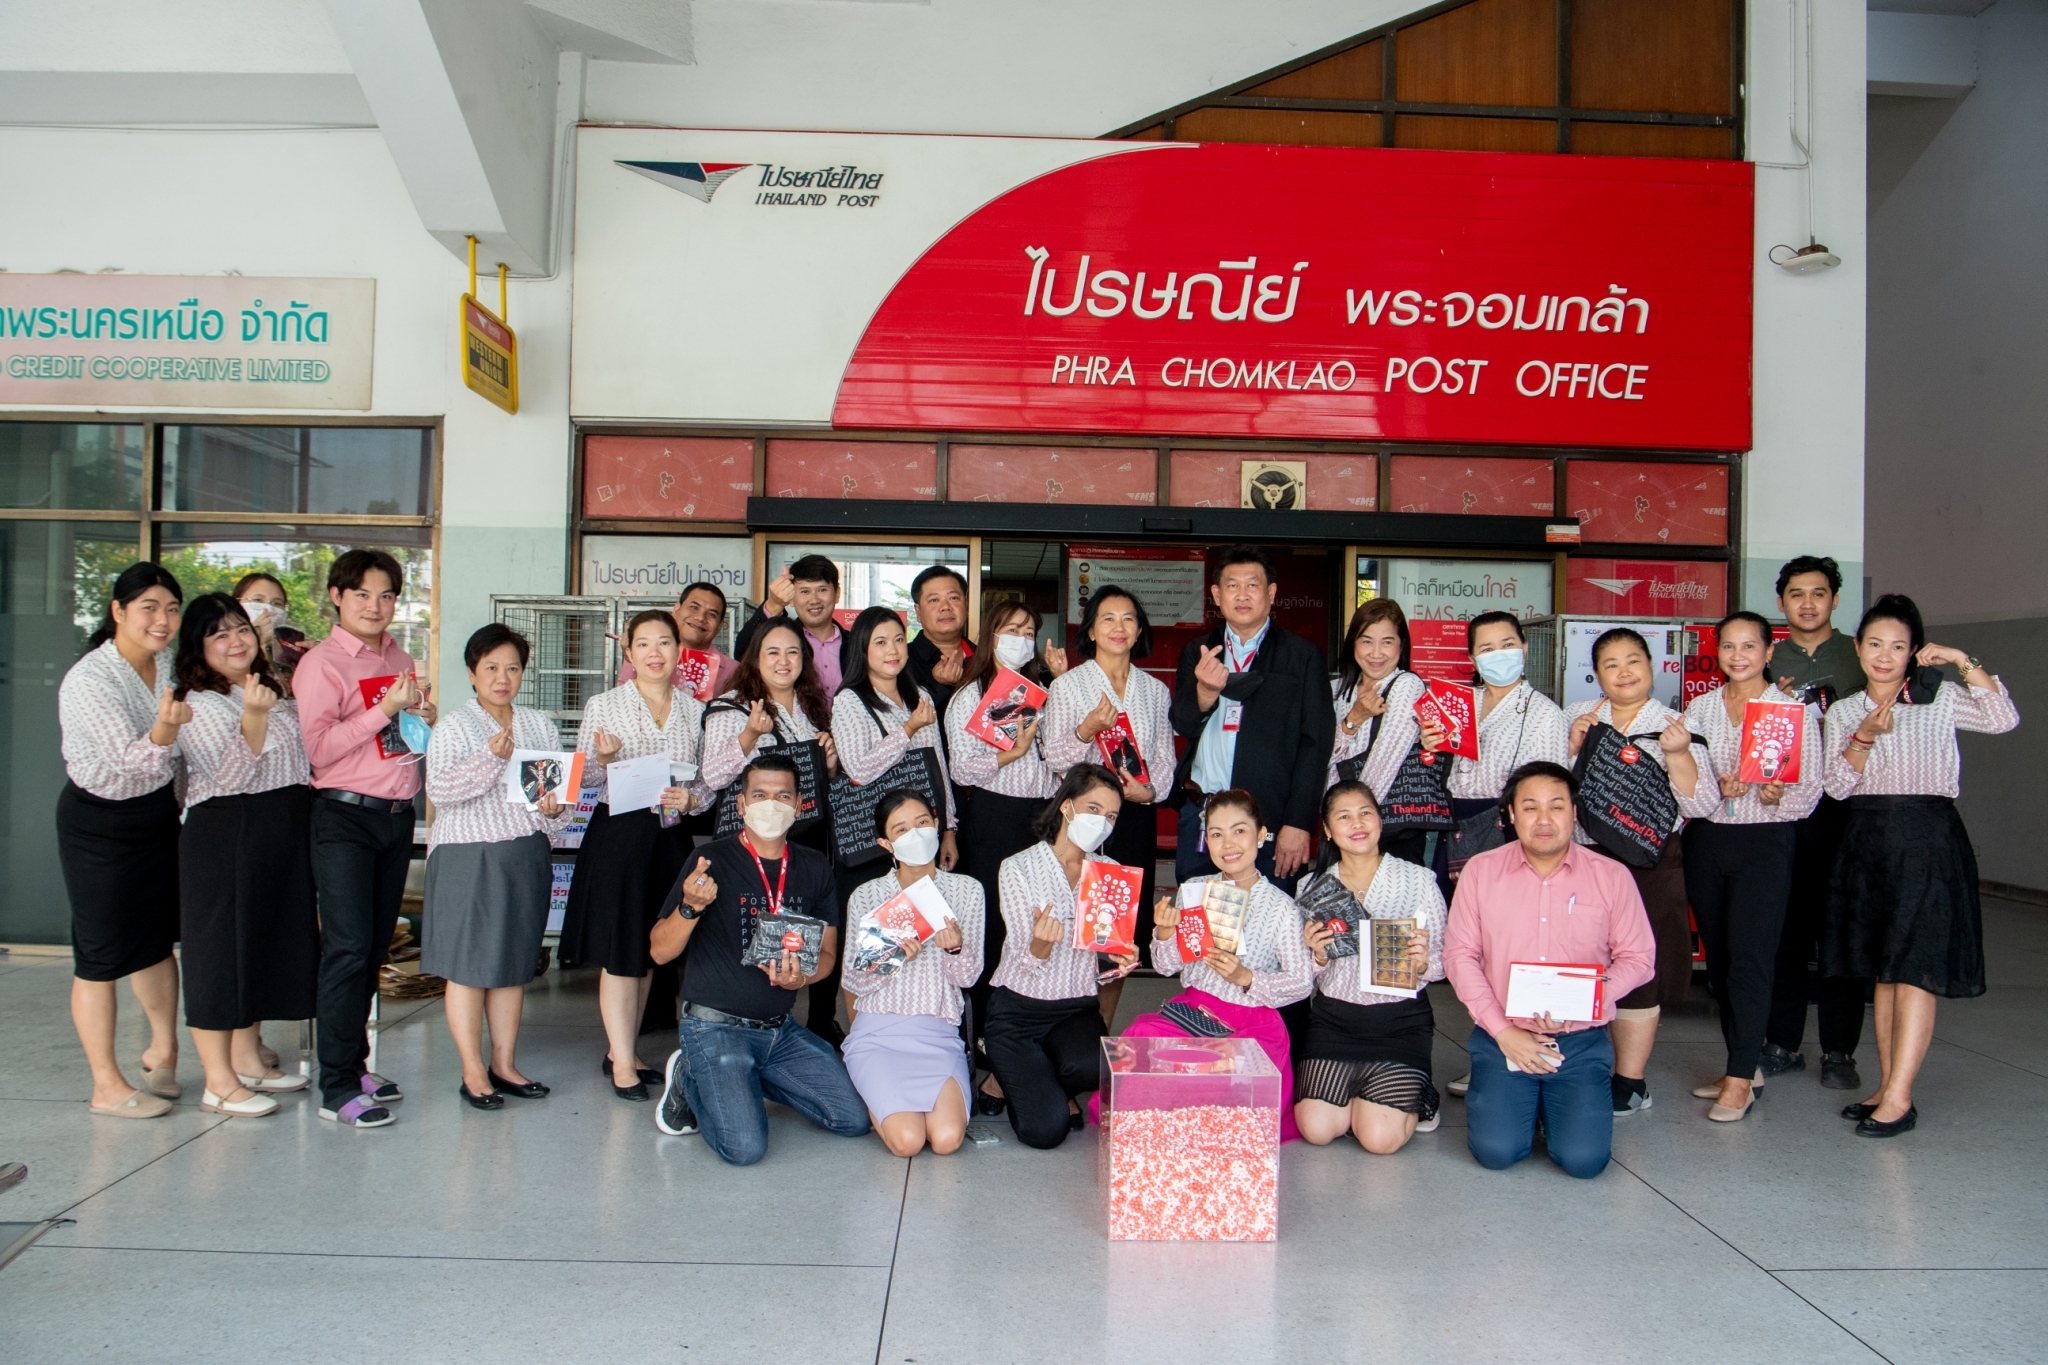 มจพ. จับมือ บริษัท ไปรษณีย์ไทย เปิดงานโครงการ GA ร่วมจัดแคมเปญ reBOX “กล่อง BOX บุญเพื่อคนพิการ”